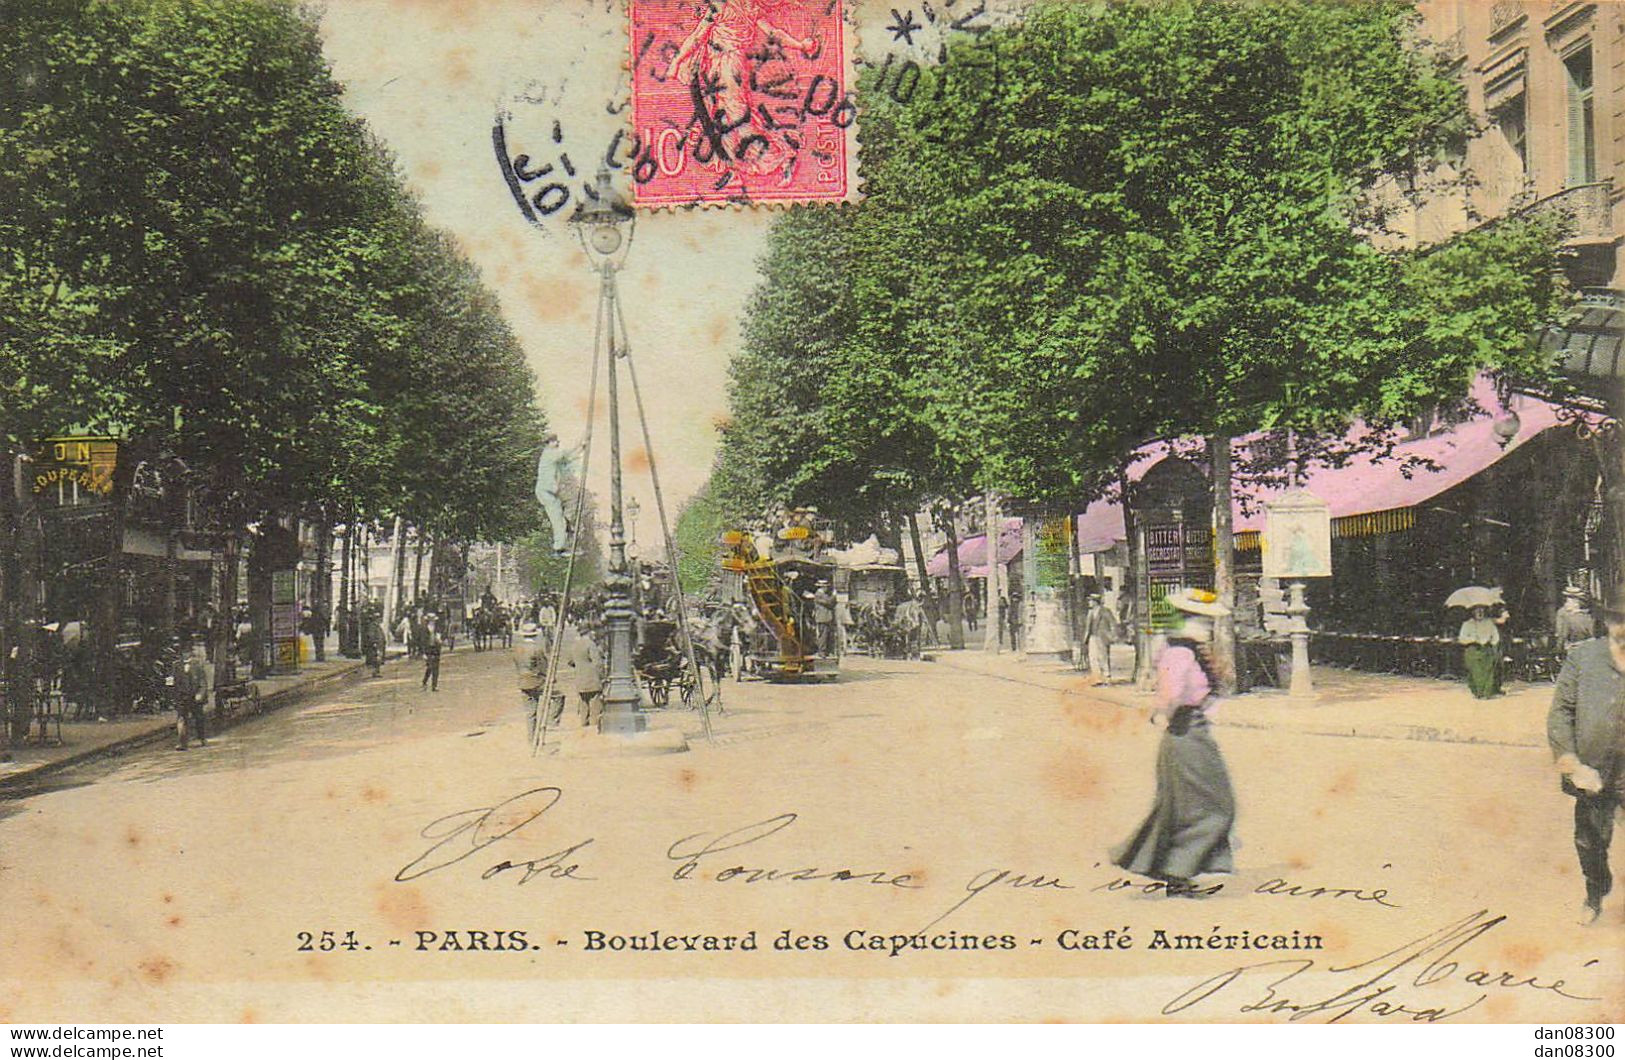 75 PARIS BOULEVARD DES CAPUCINES CAFE AMERICAIN - Cafés, Hôtels, Restaurants